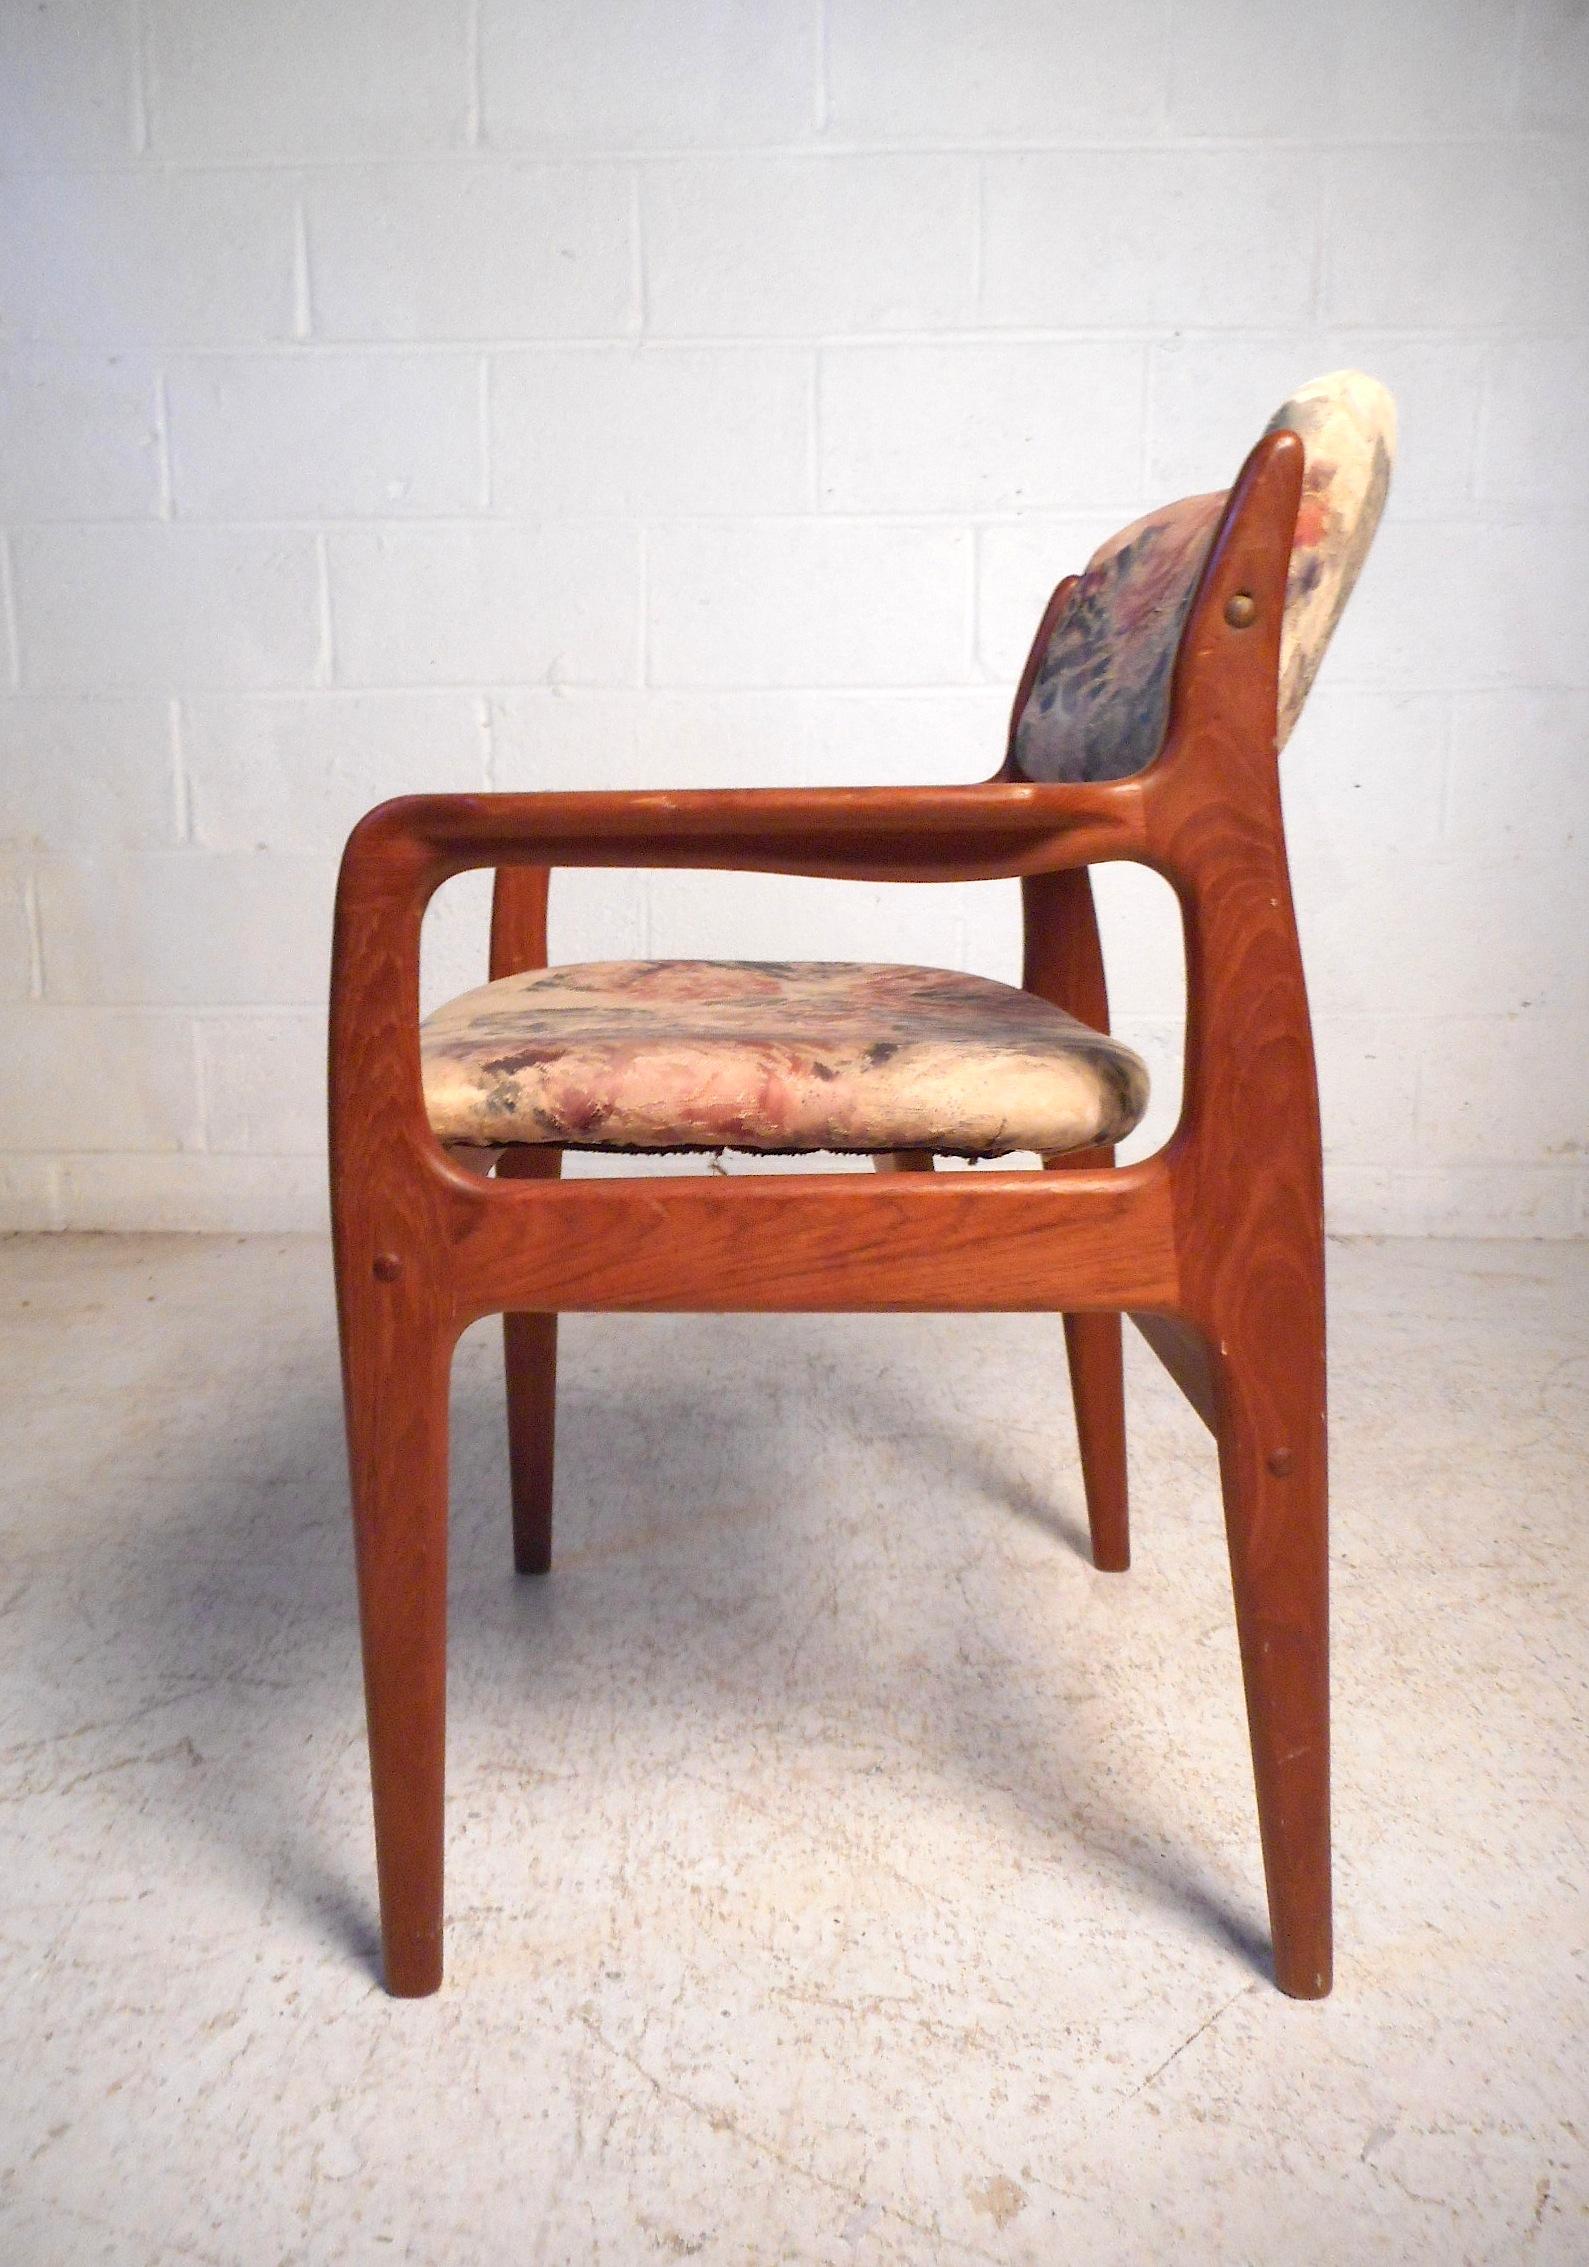 benny linden furniture